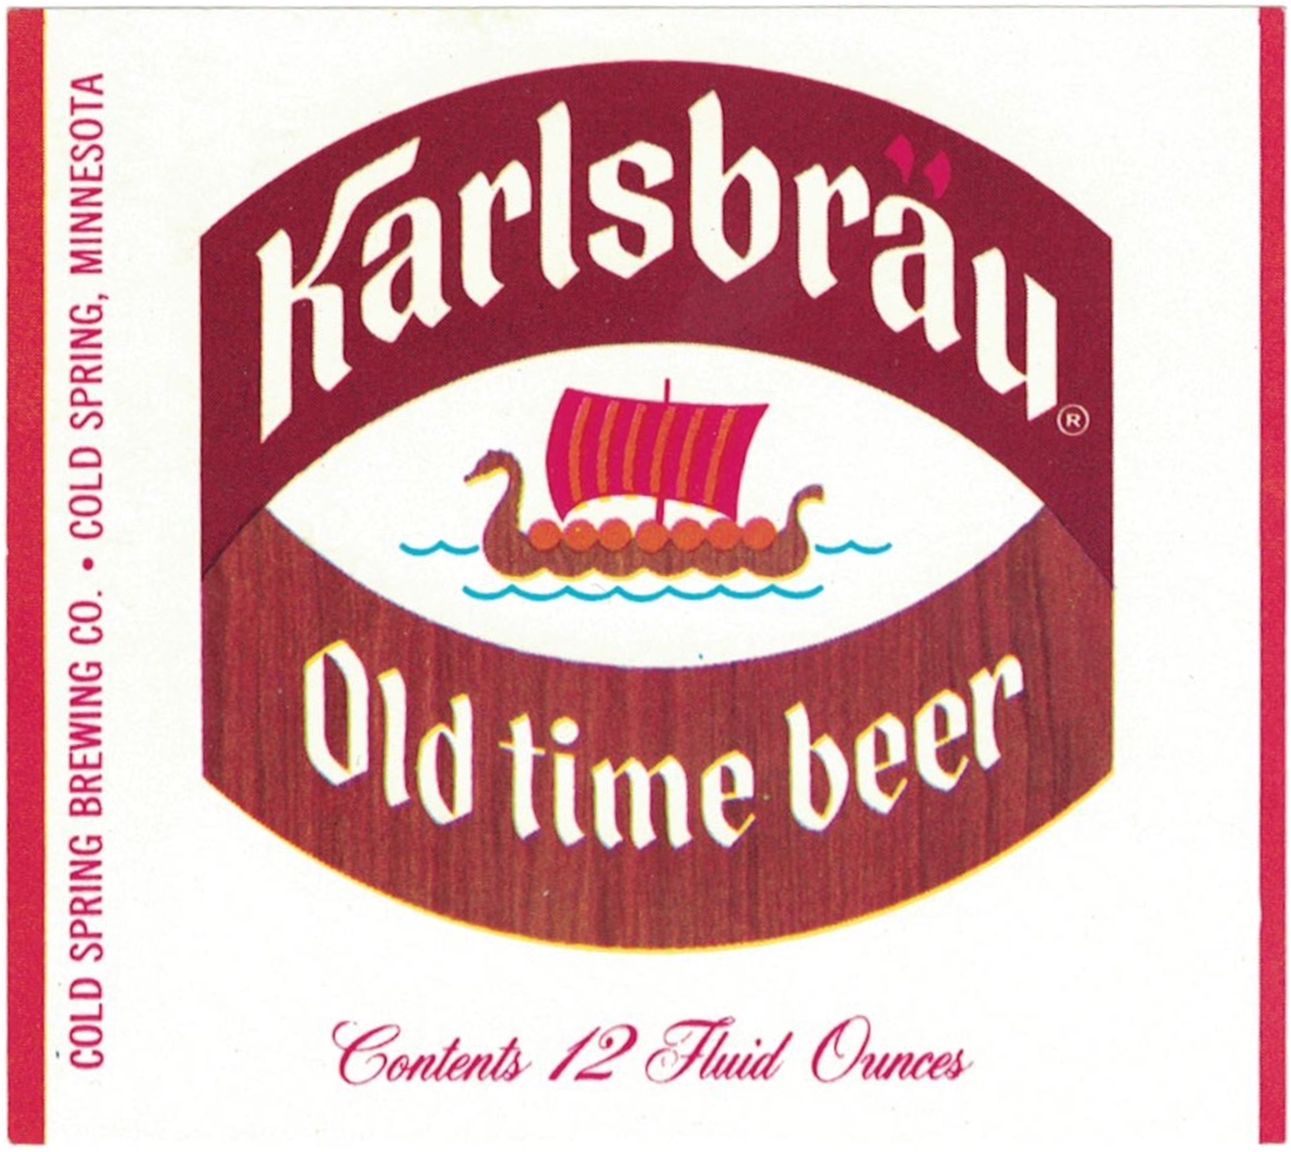 Karlsbrau Old Time Beer Label